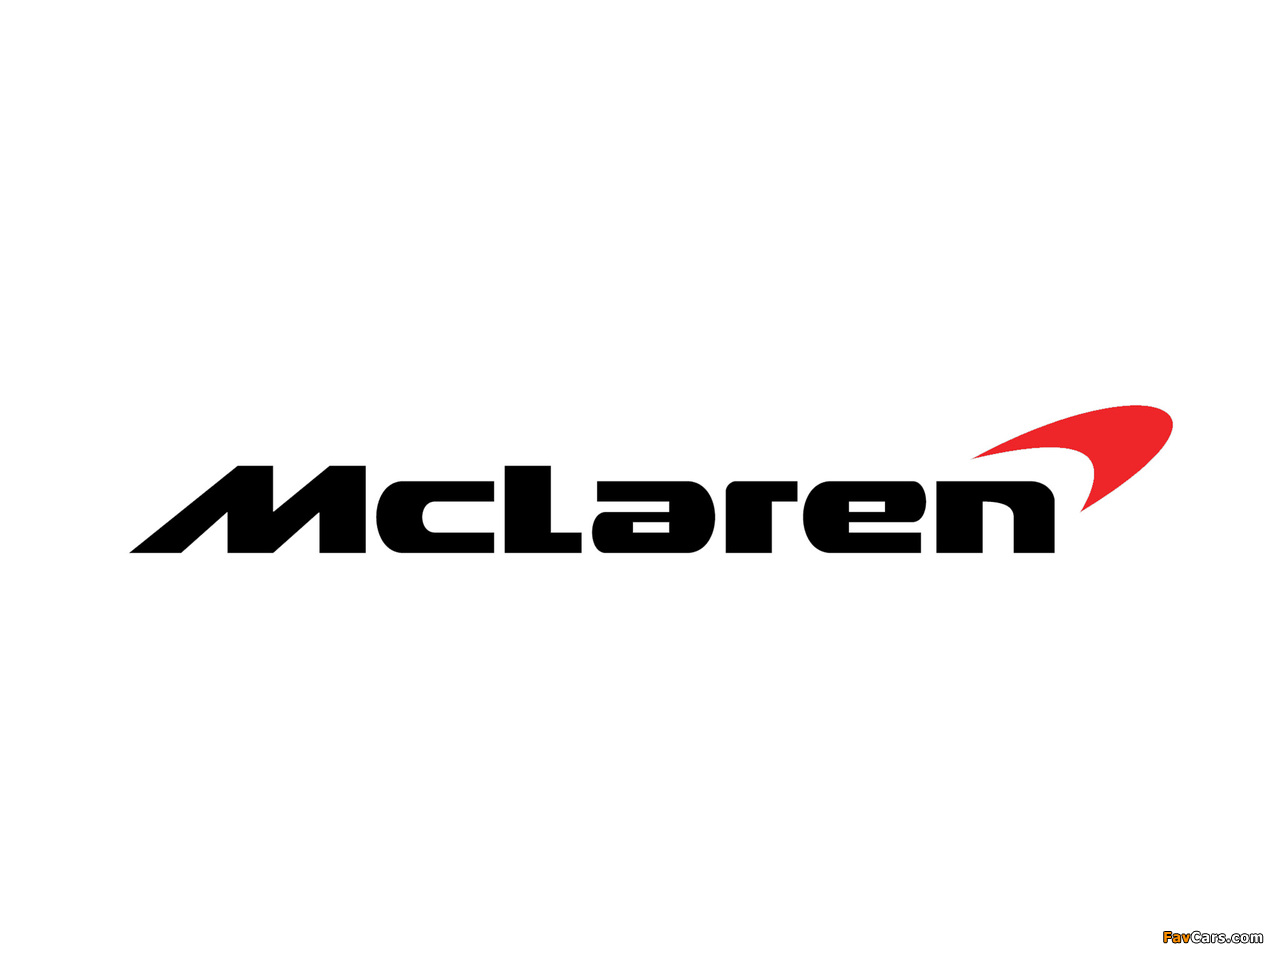 Images of McLaren (1280 x 960)